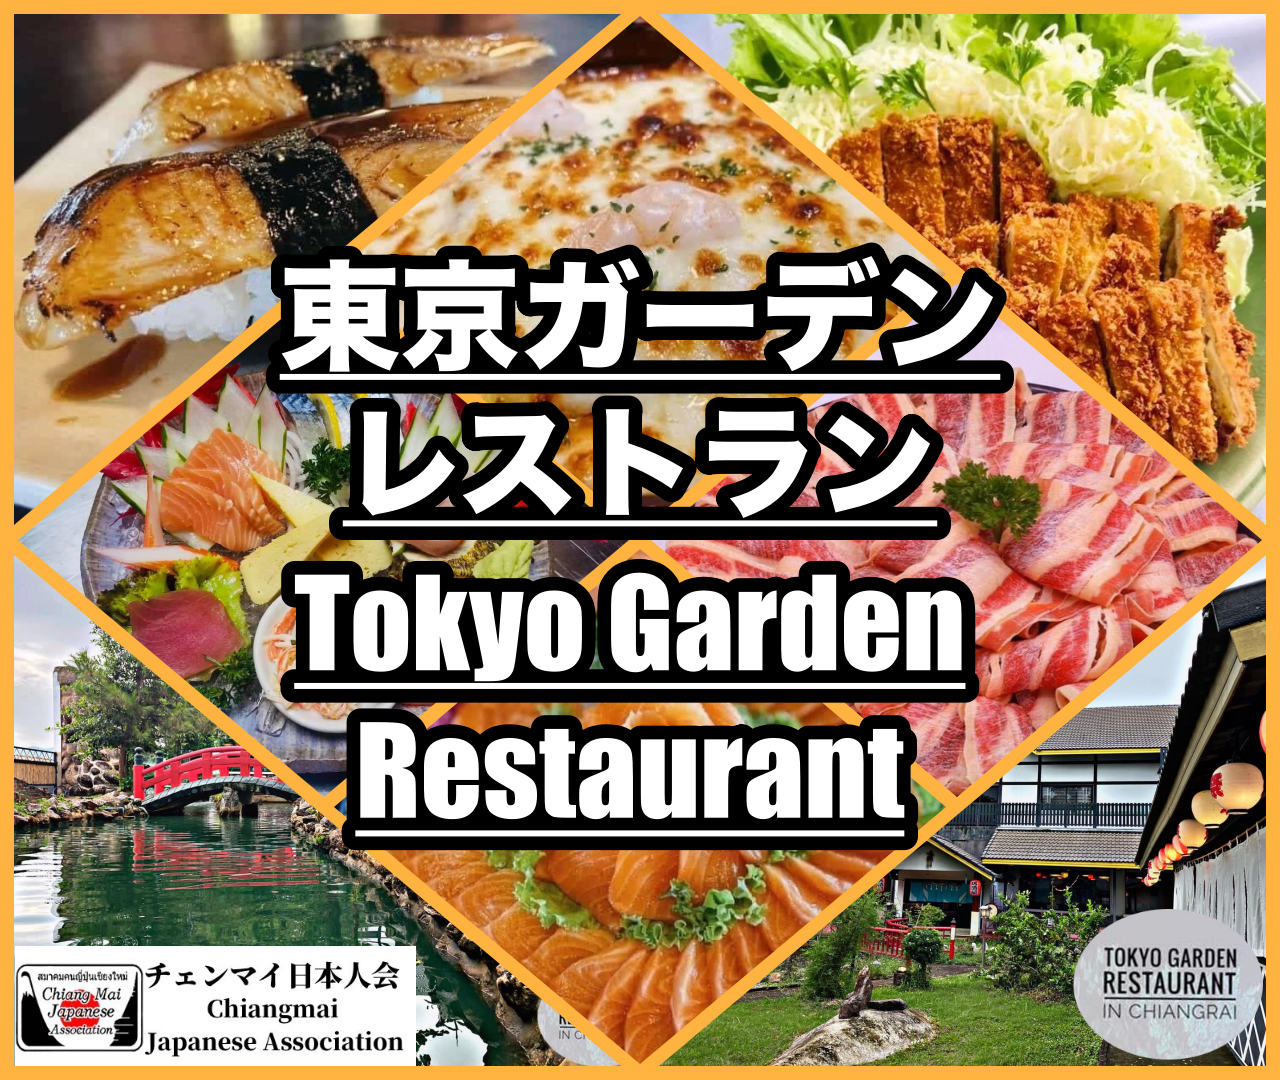 東京ガーデンレストラン (Tokyo Garden Restaurant)